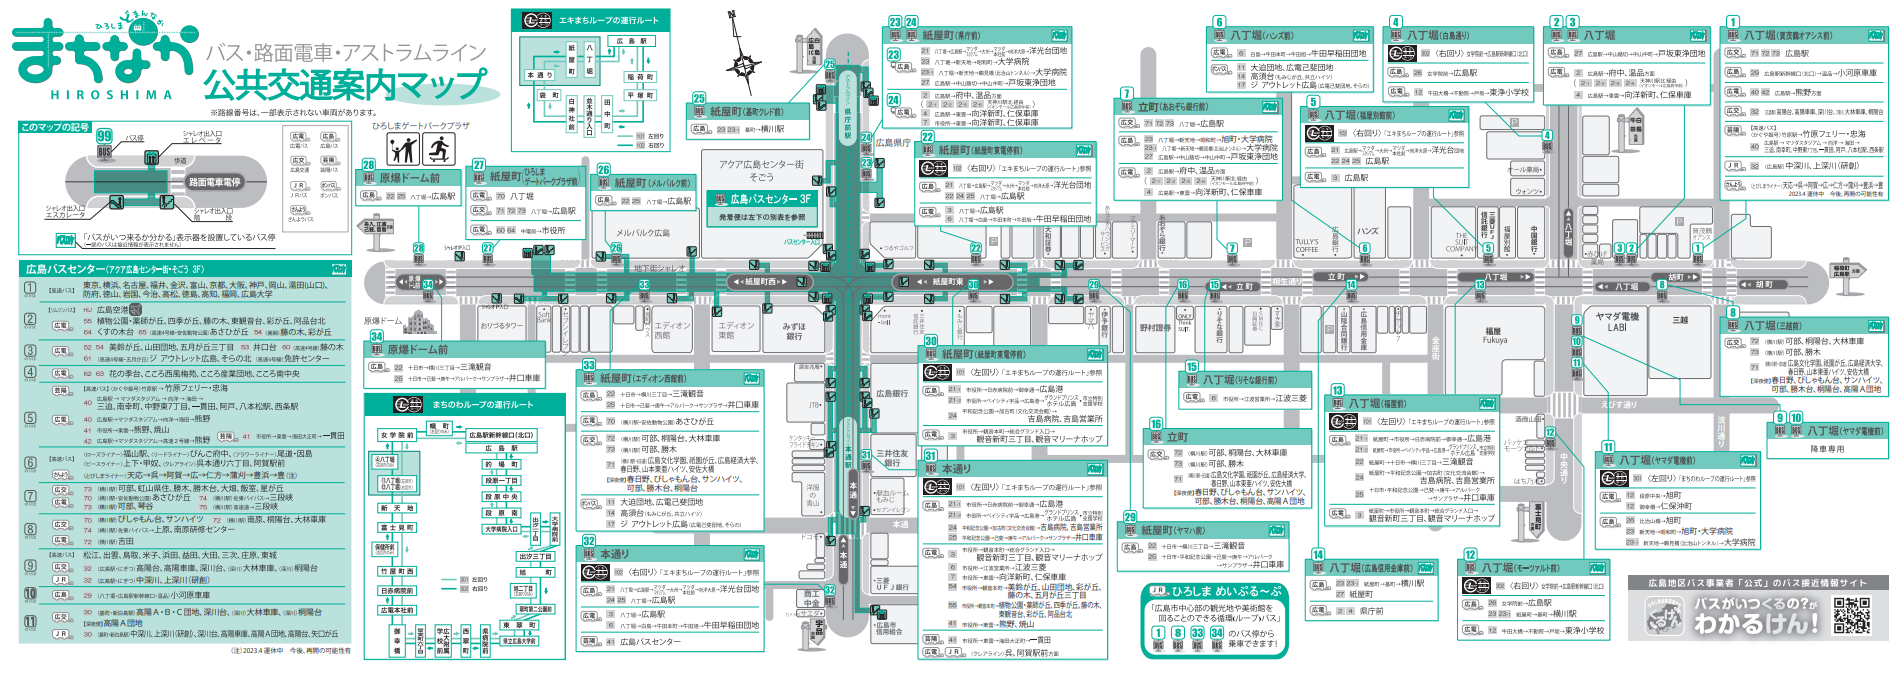 Mapa de guia de transporte público